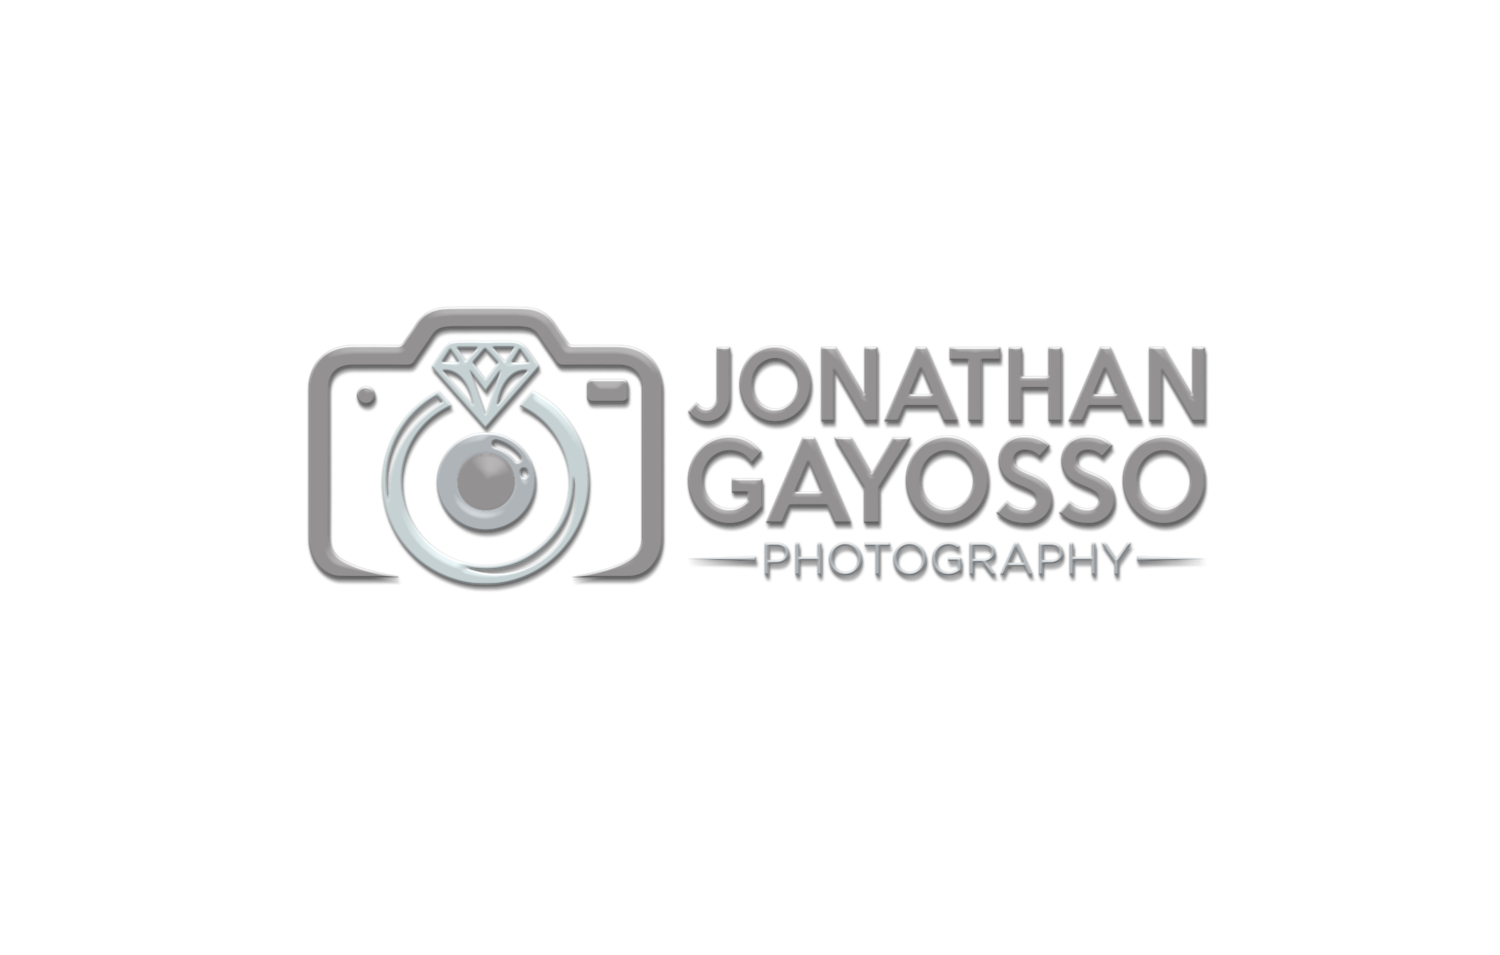 Jonathan Gayosso Photography